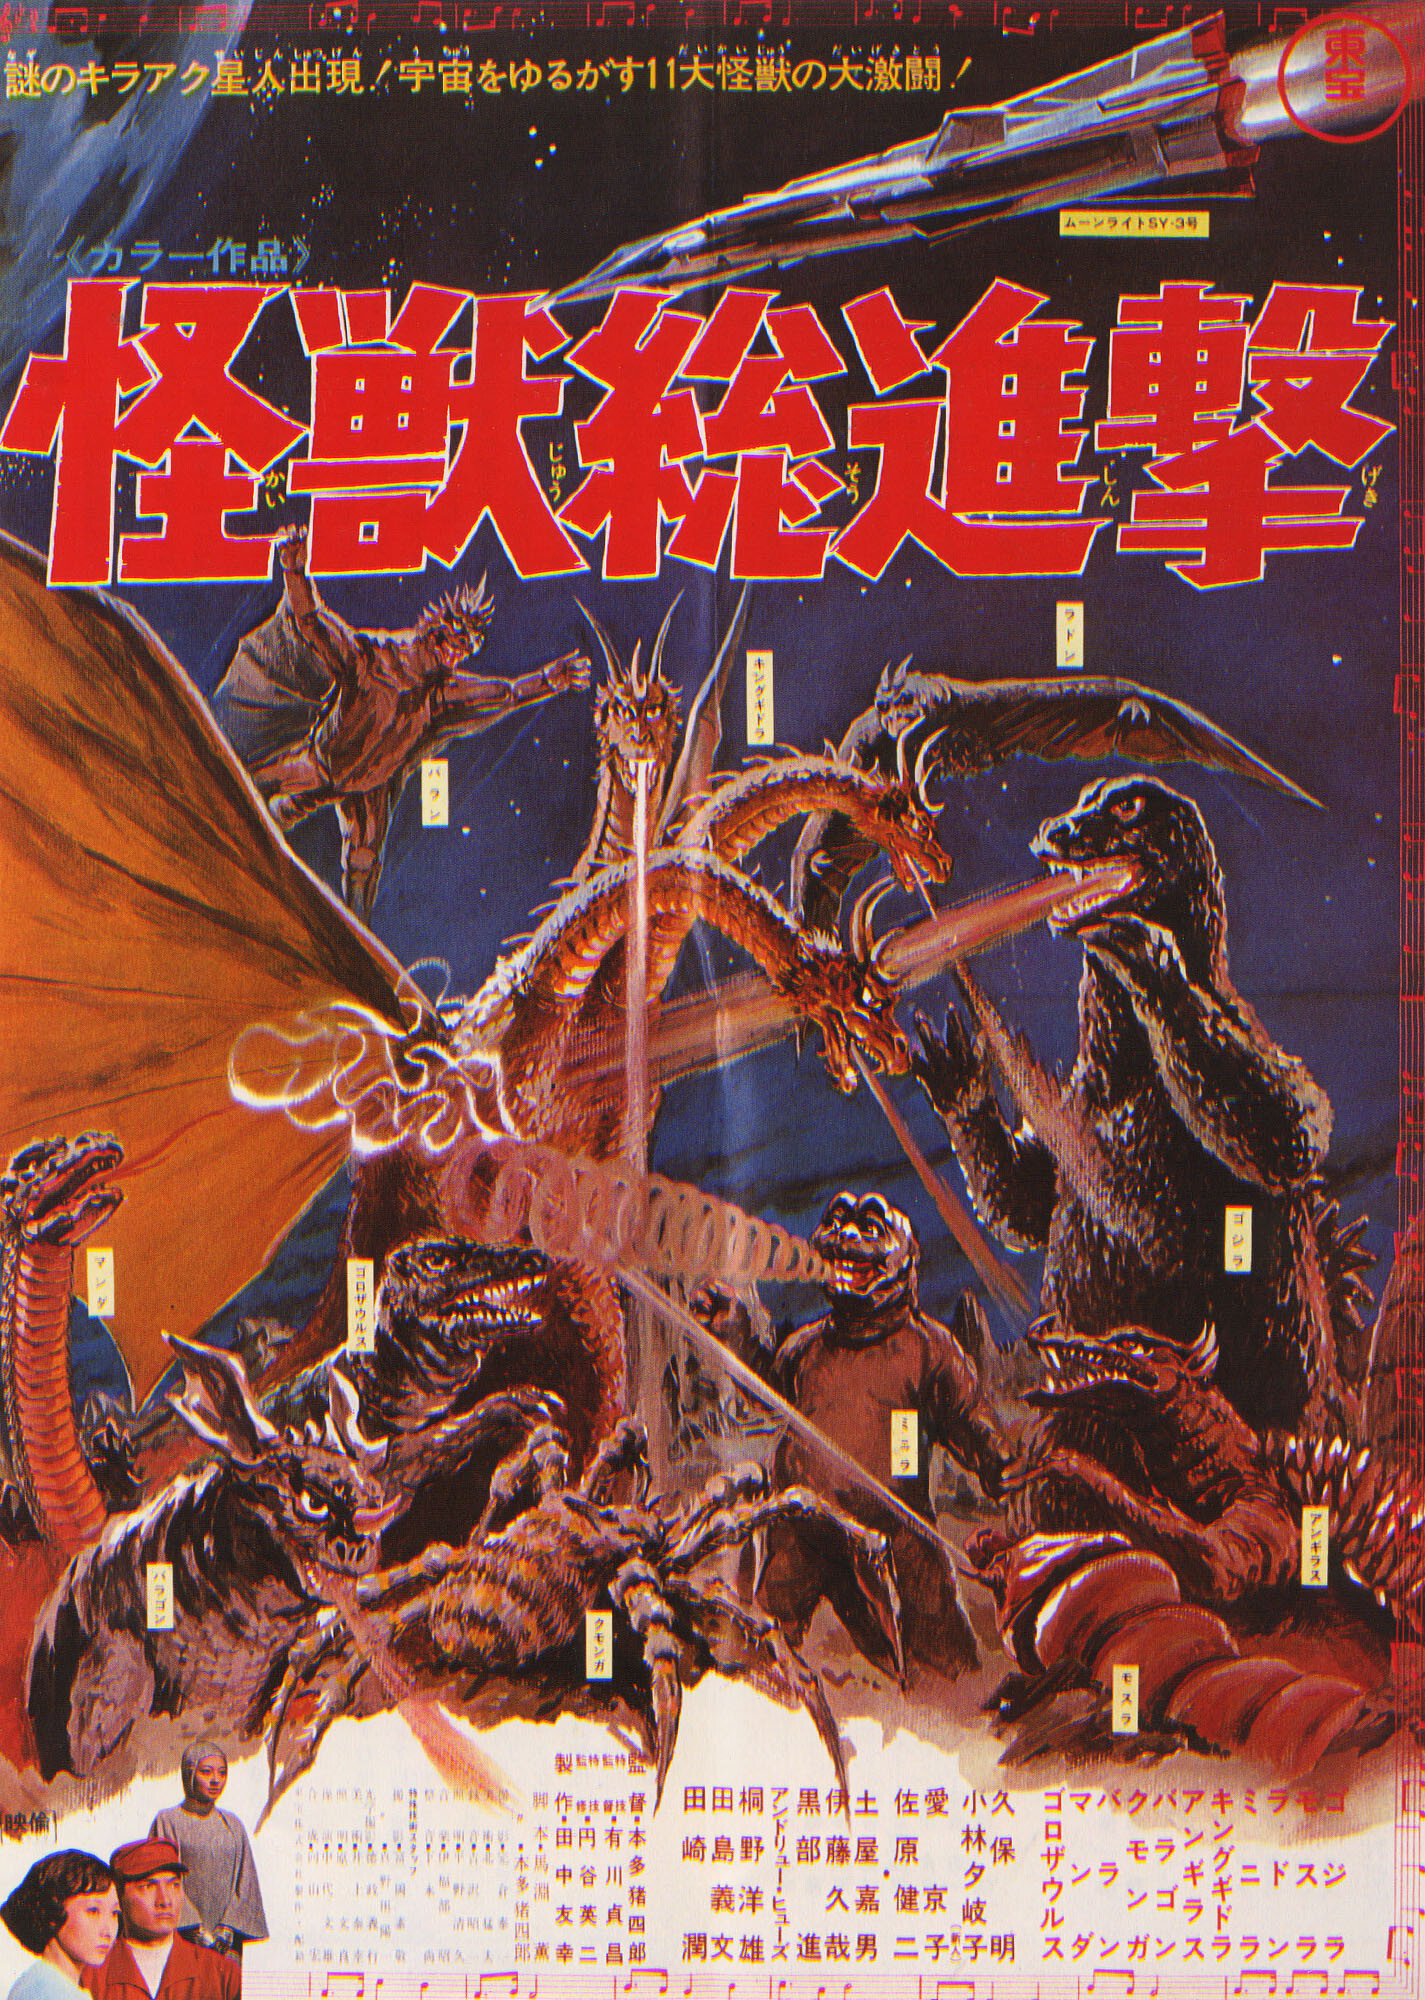 Годзилла: Парад монстров (Destroy All Monsters, 1968), режиссёр Исиро Хонда,  японский постер к фильму (ужасы, 1968 год)